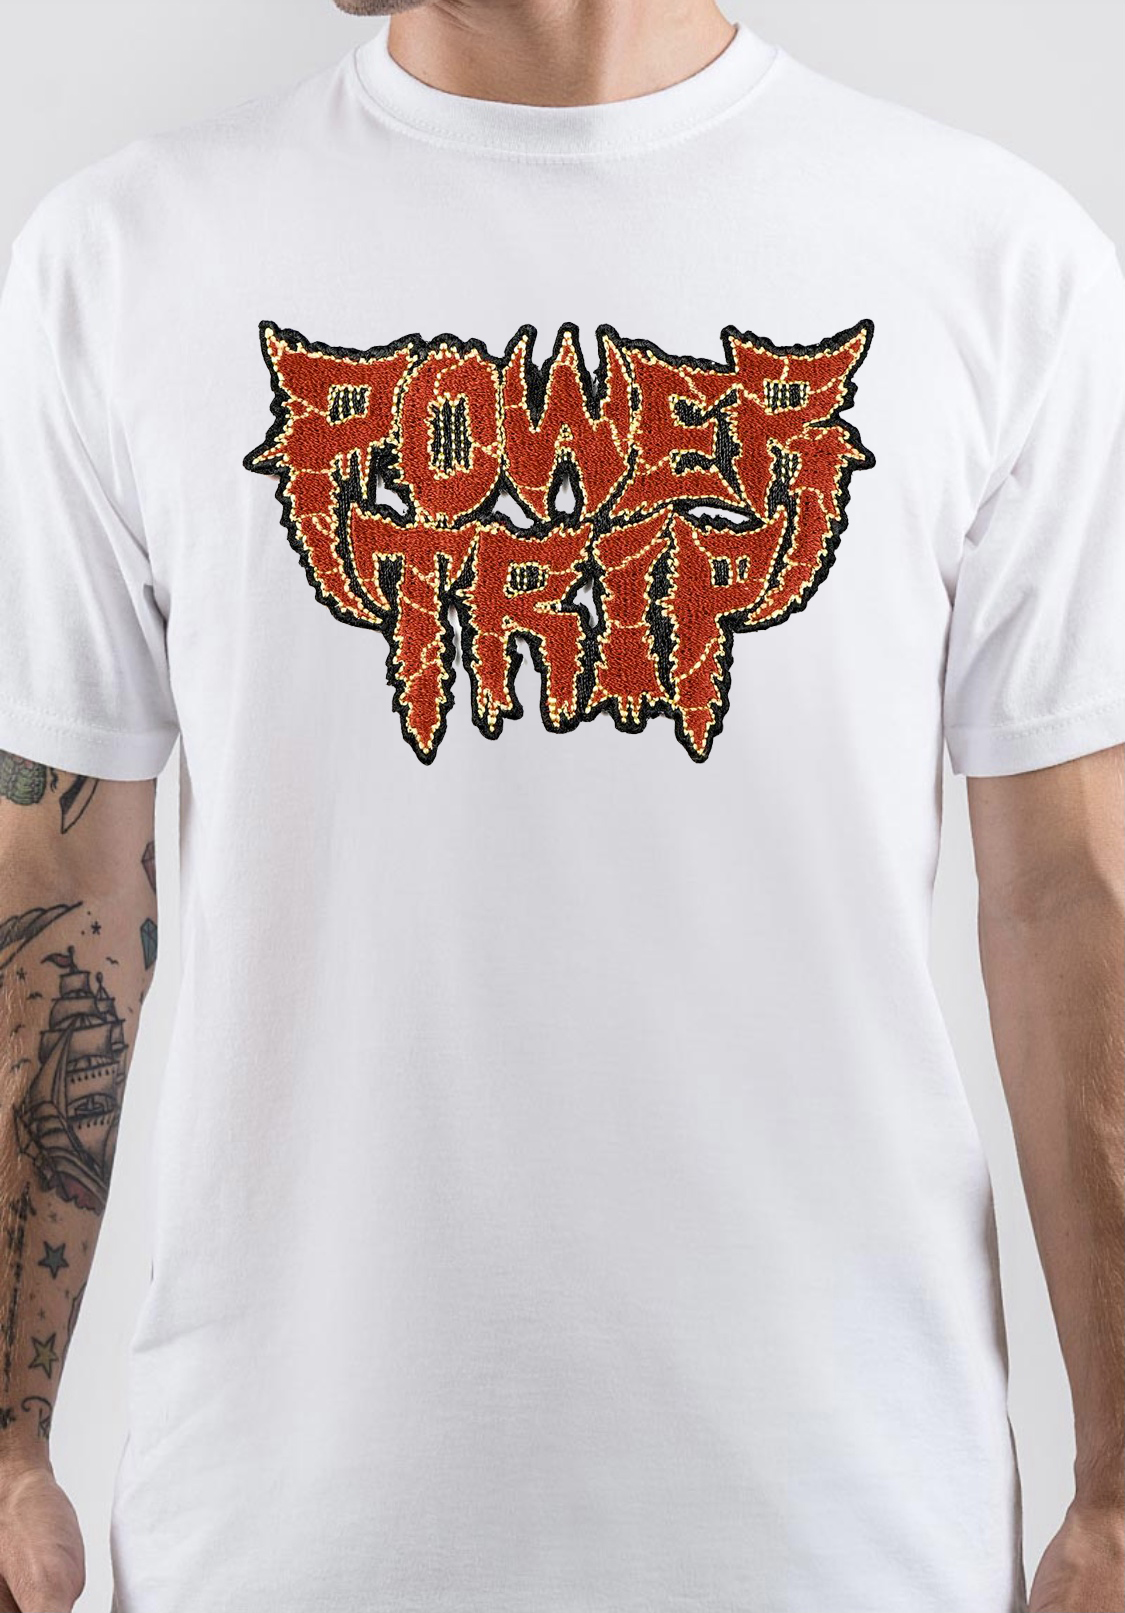 Power Trip Band Logo TShirt Supreme Shirts